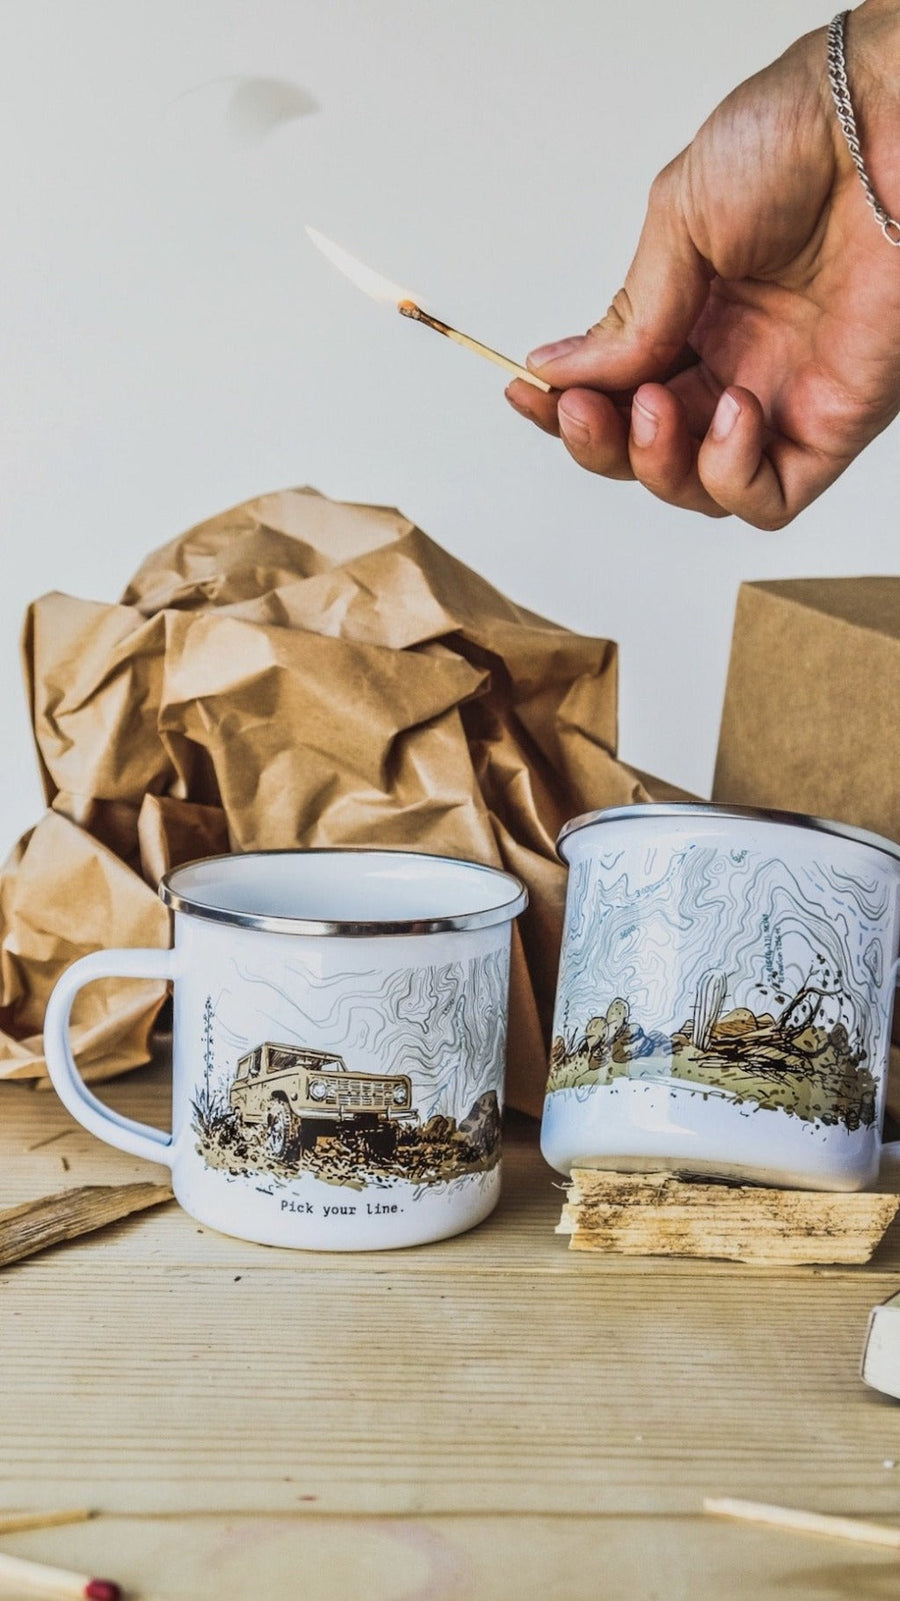 Pick Your Line Coffee Mug Mug Couloir[art] 